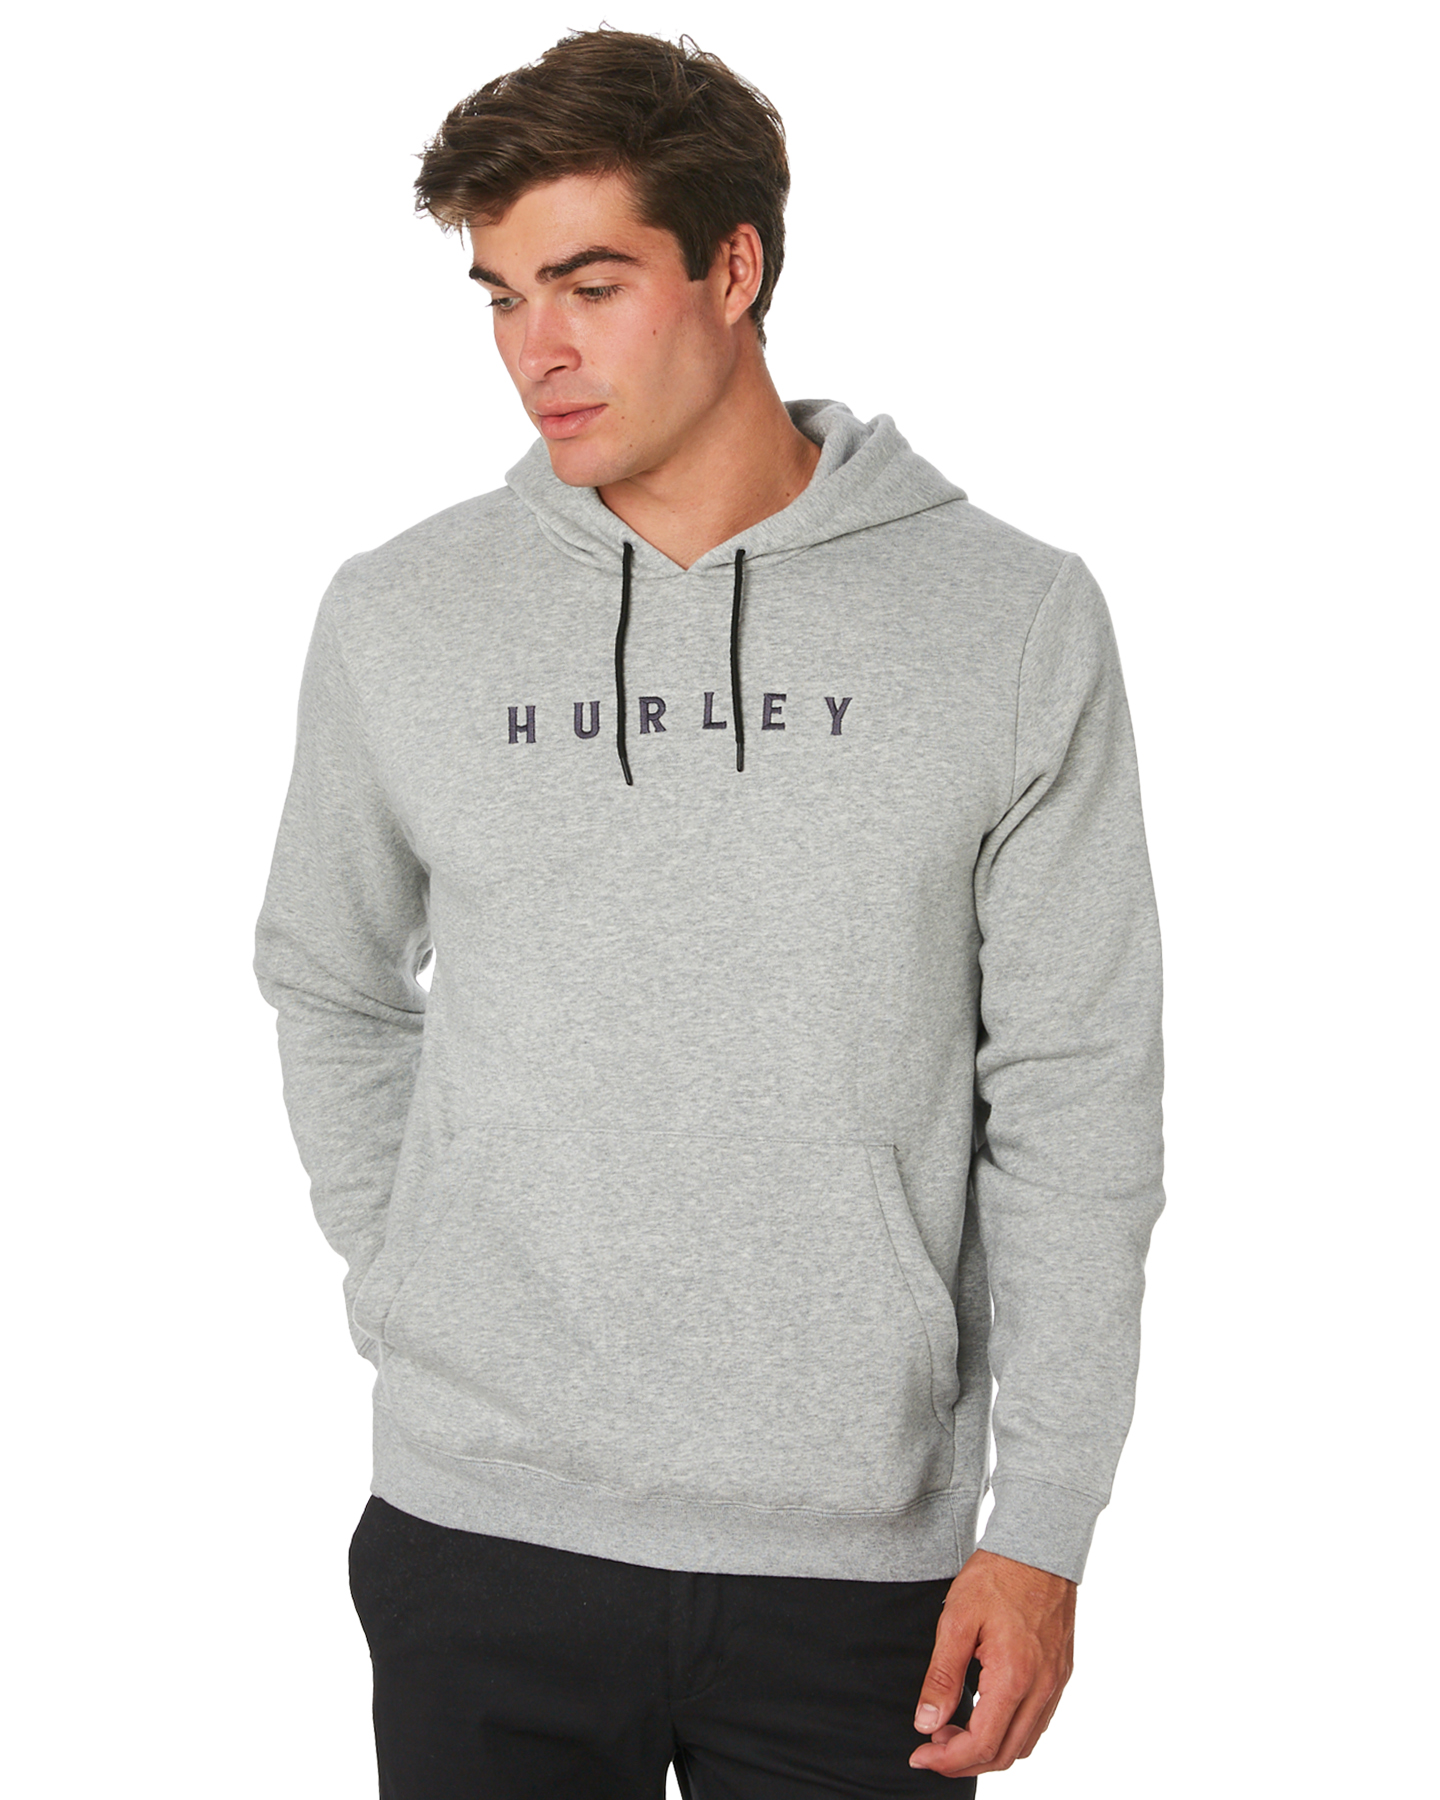 Hurley Homeward Pop Mens Hoodie - Dark Grey Heather | SurfStitch